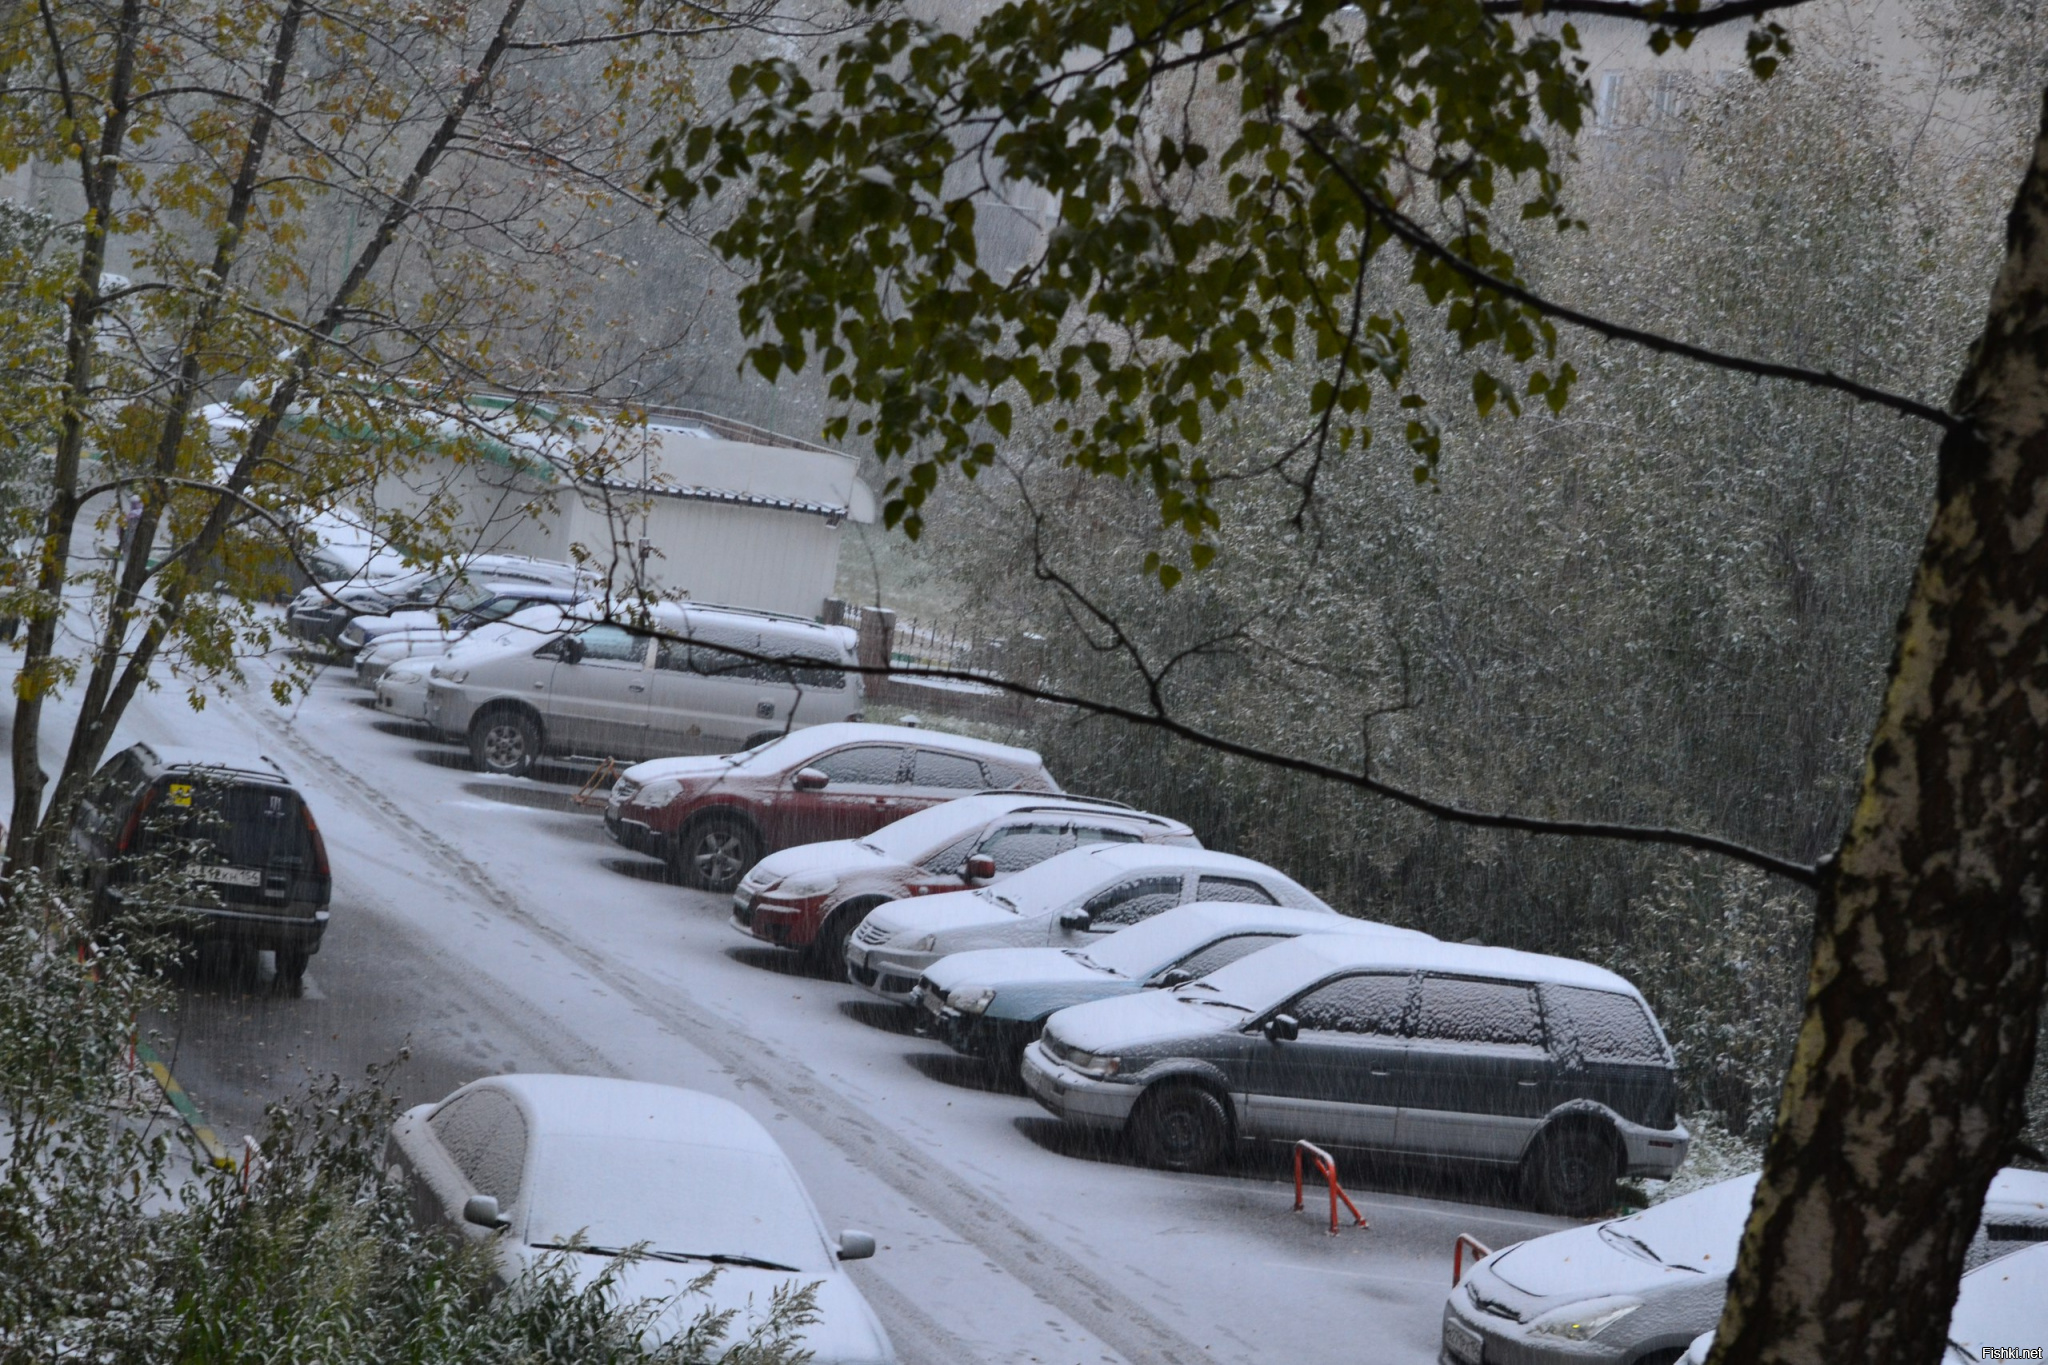 Сочи снегопад сегодня. Где лежит снег сегодня. Чита снег сегодня. Екатеринбург сегодня фото снегопад.